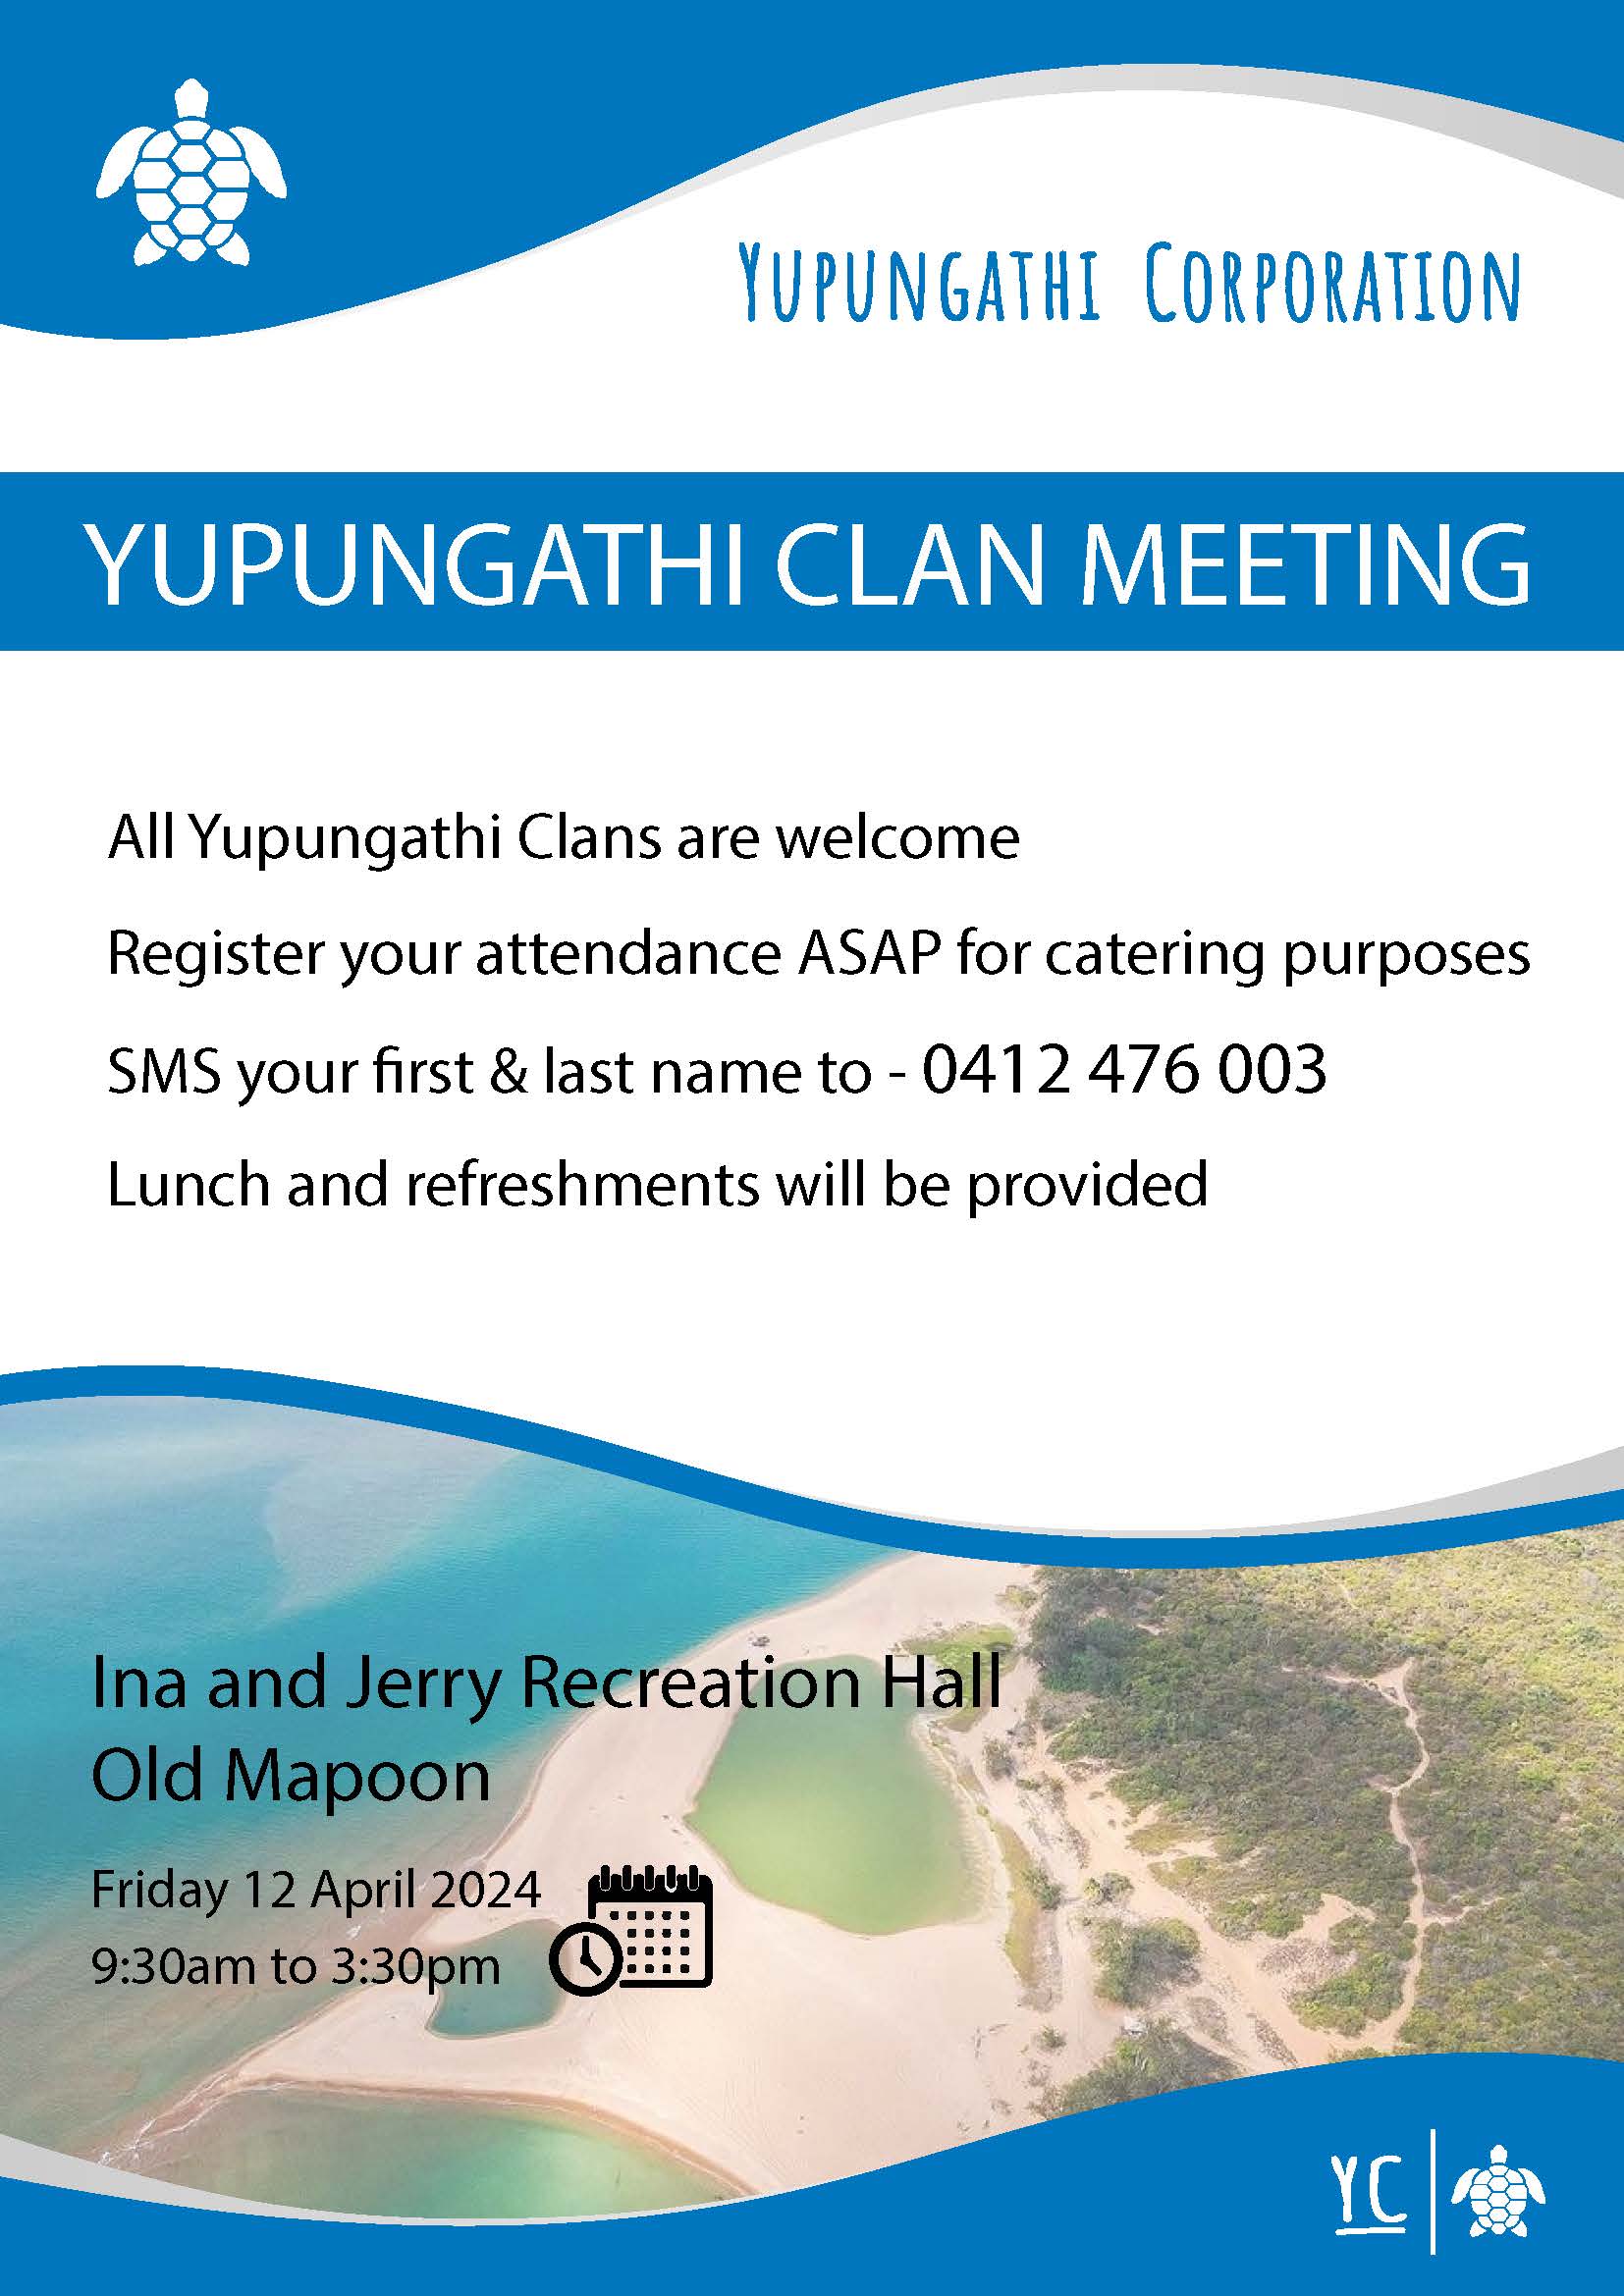 Yupungathi Clan Meeting in Mapoon in 12 April 2024